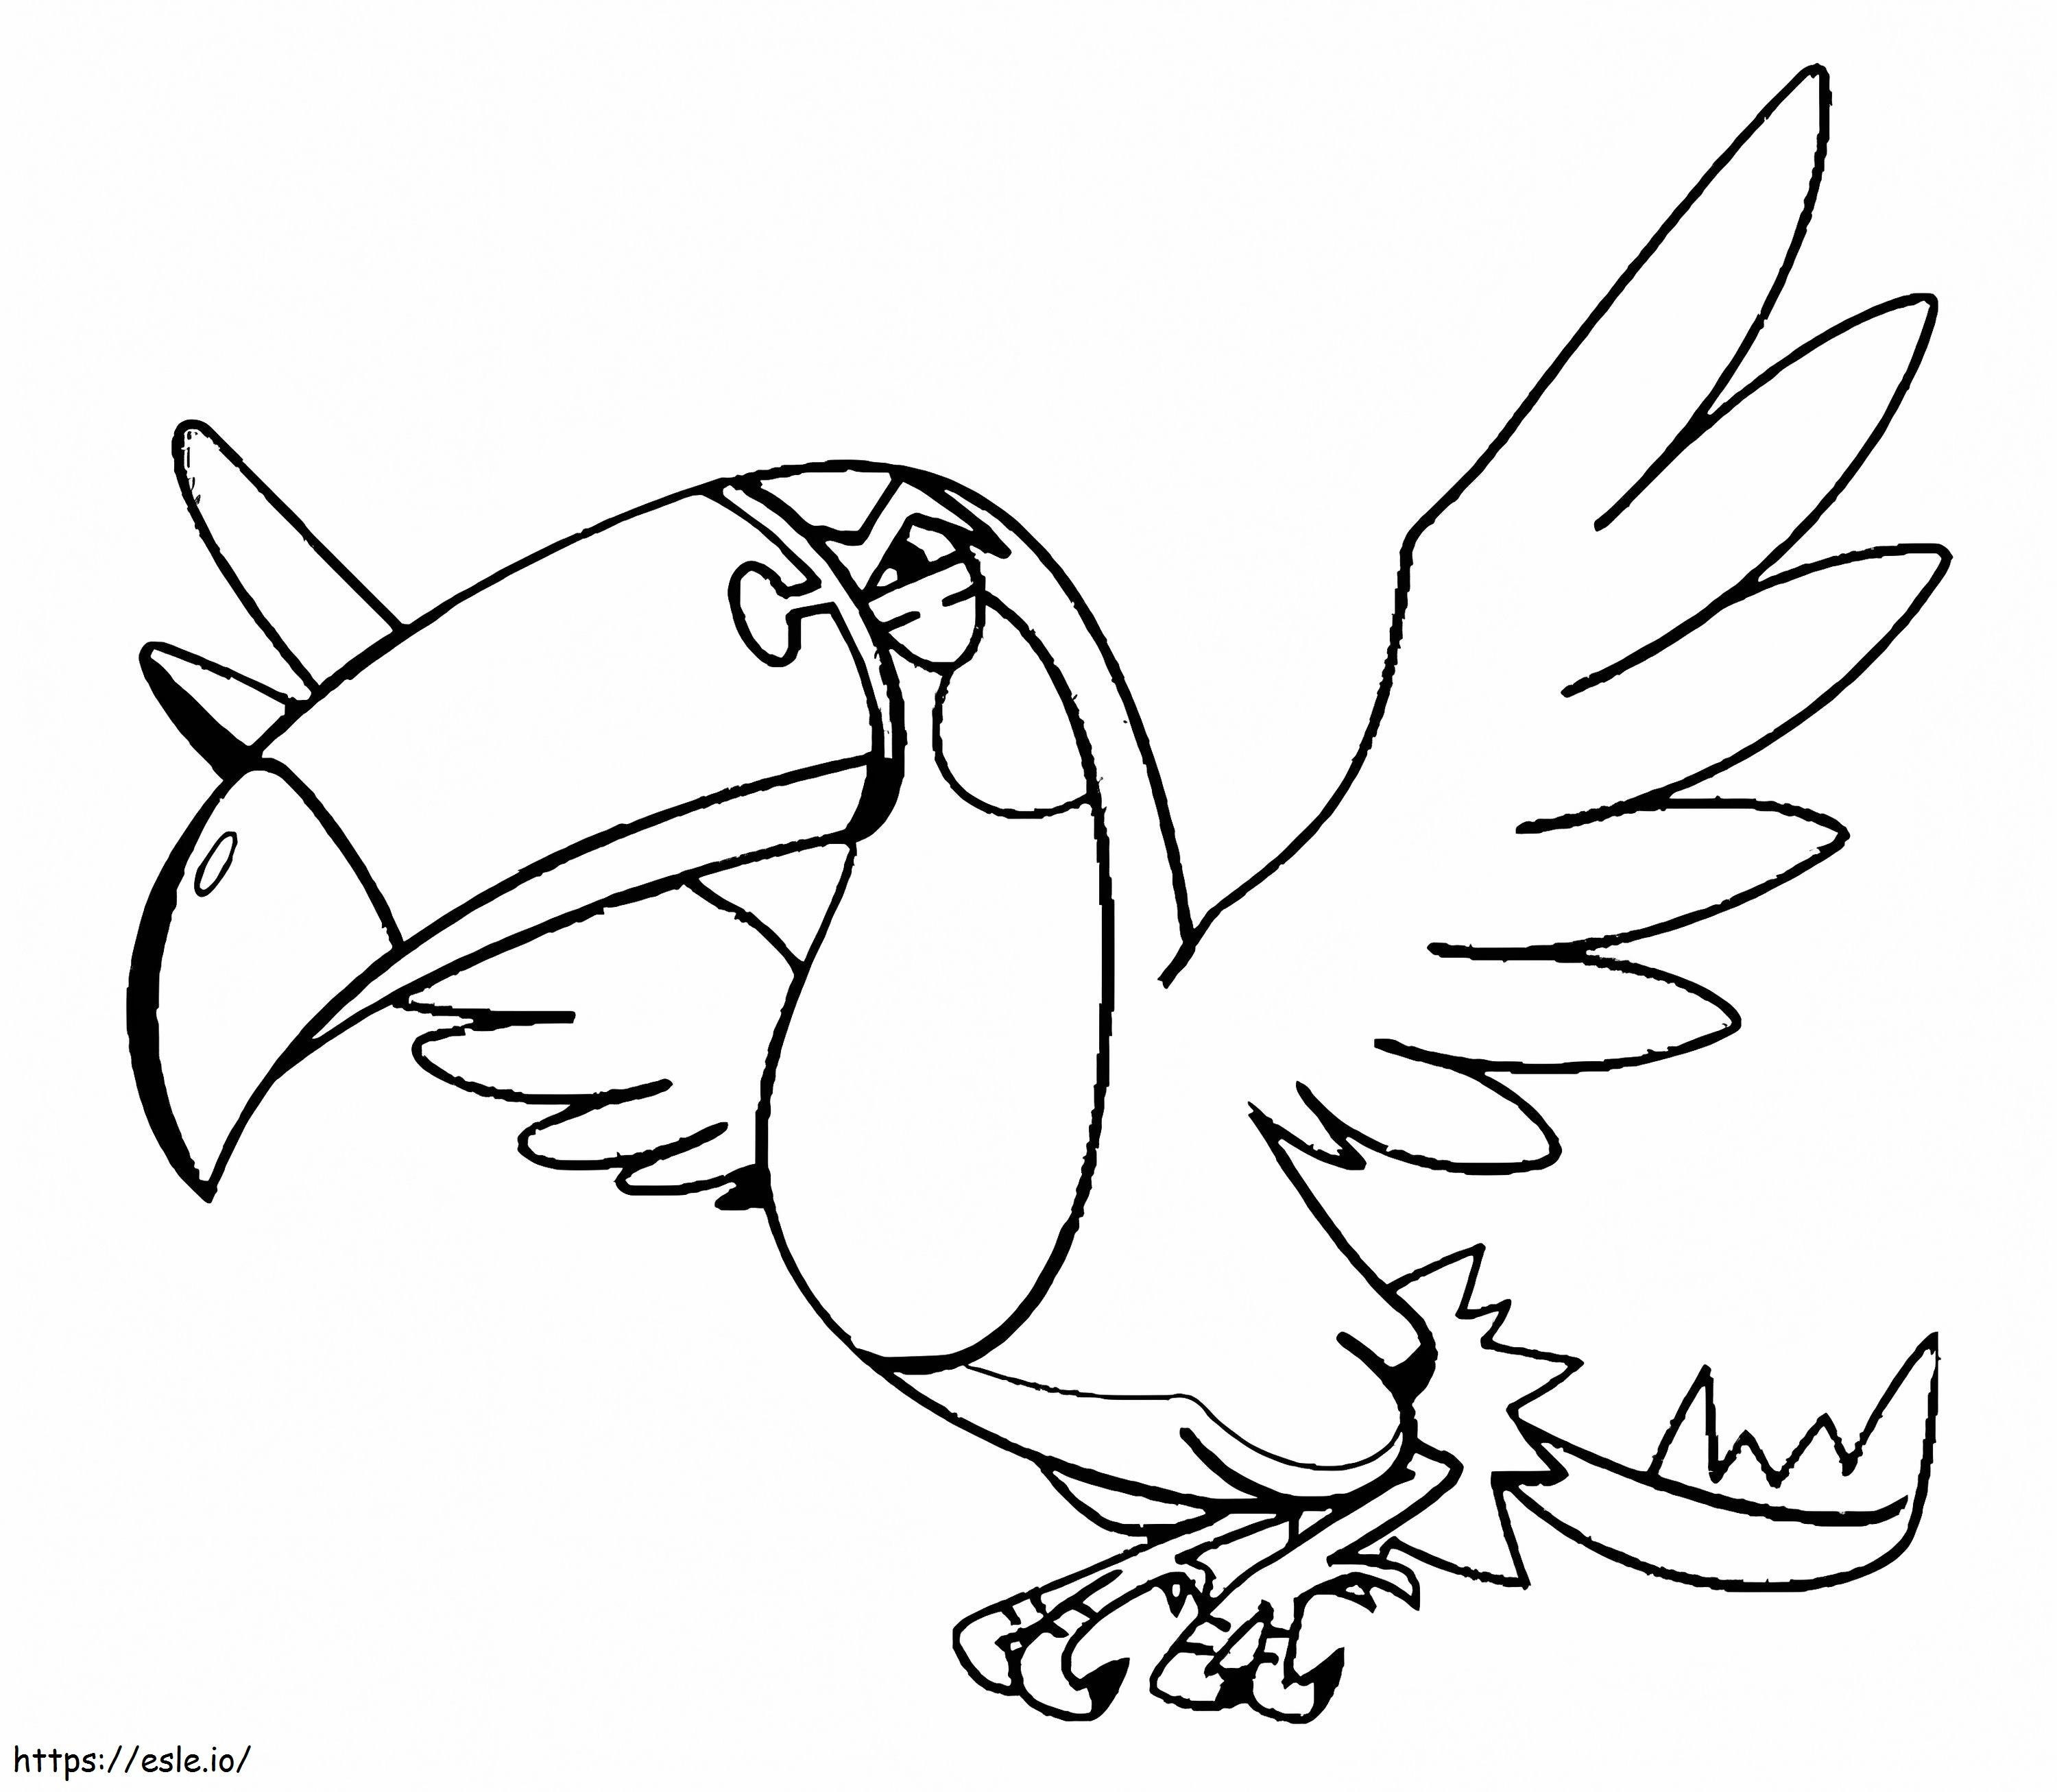 Tukanon-Pokémon ausmalbilder